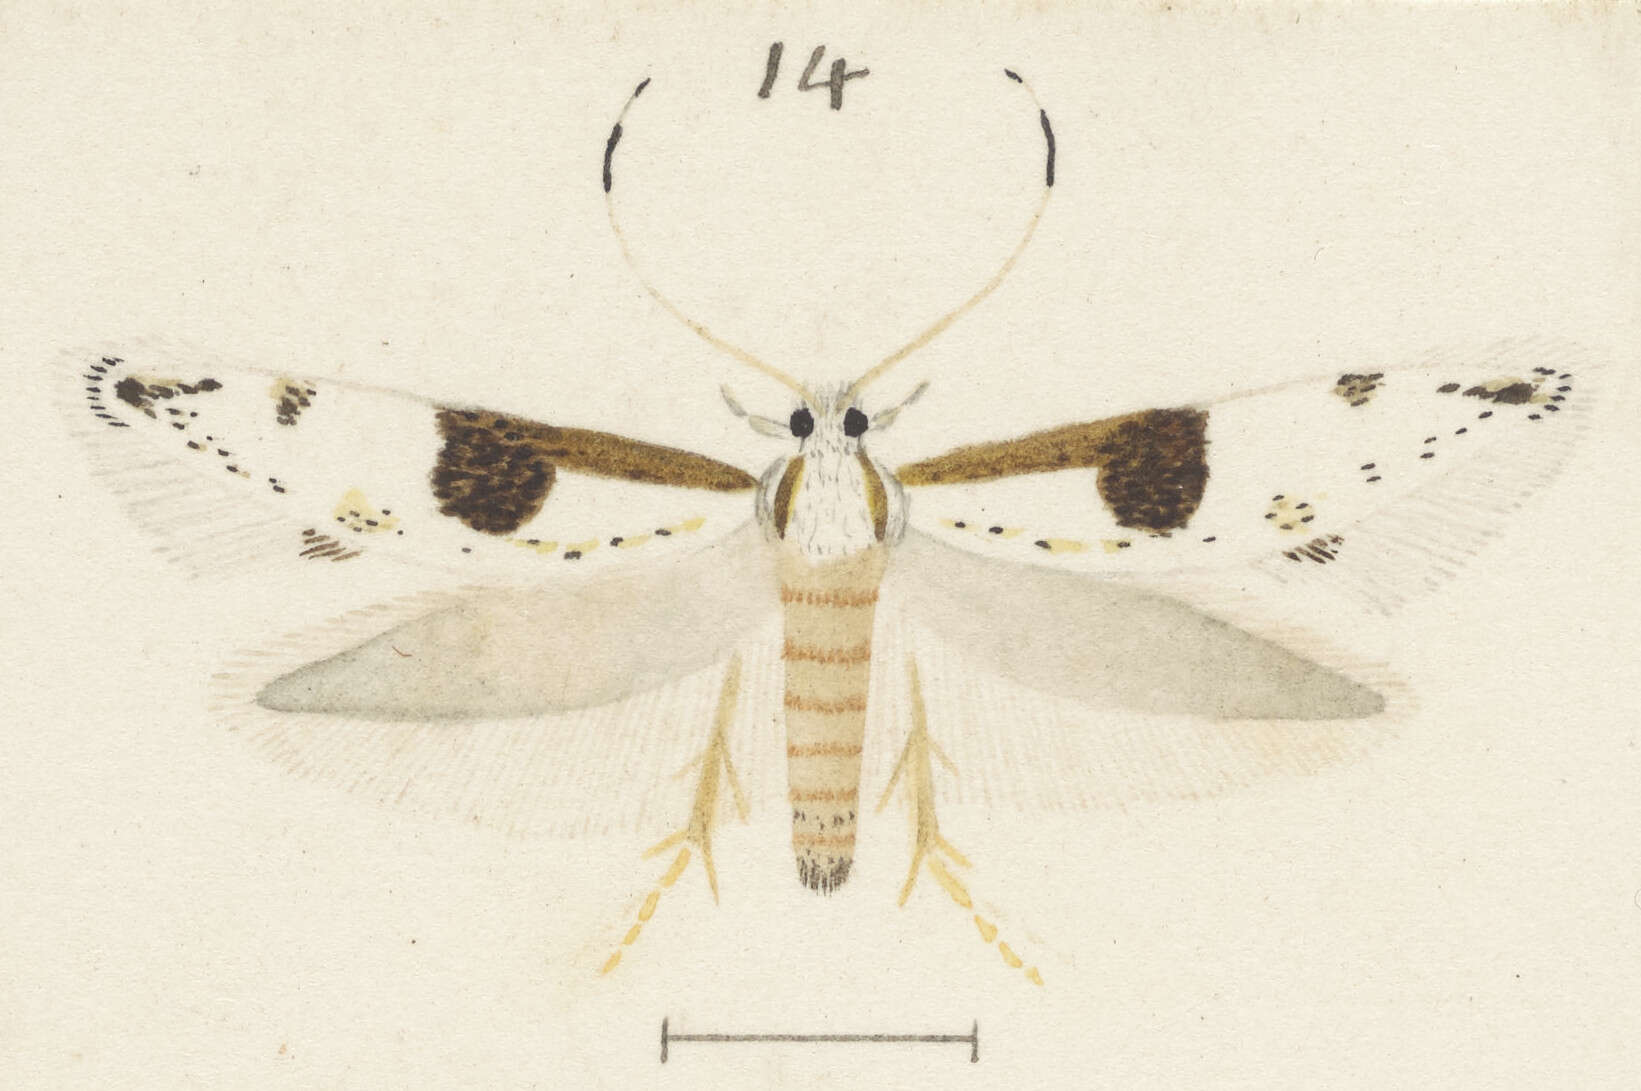 Image of Sagephora felix Meyrick 1914